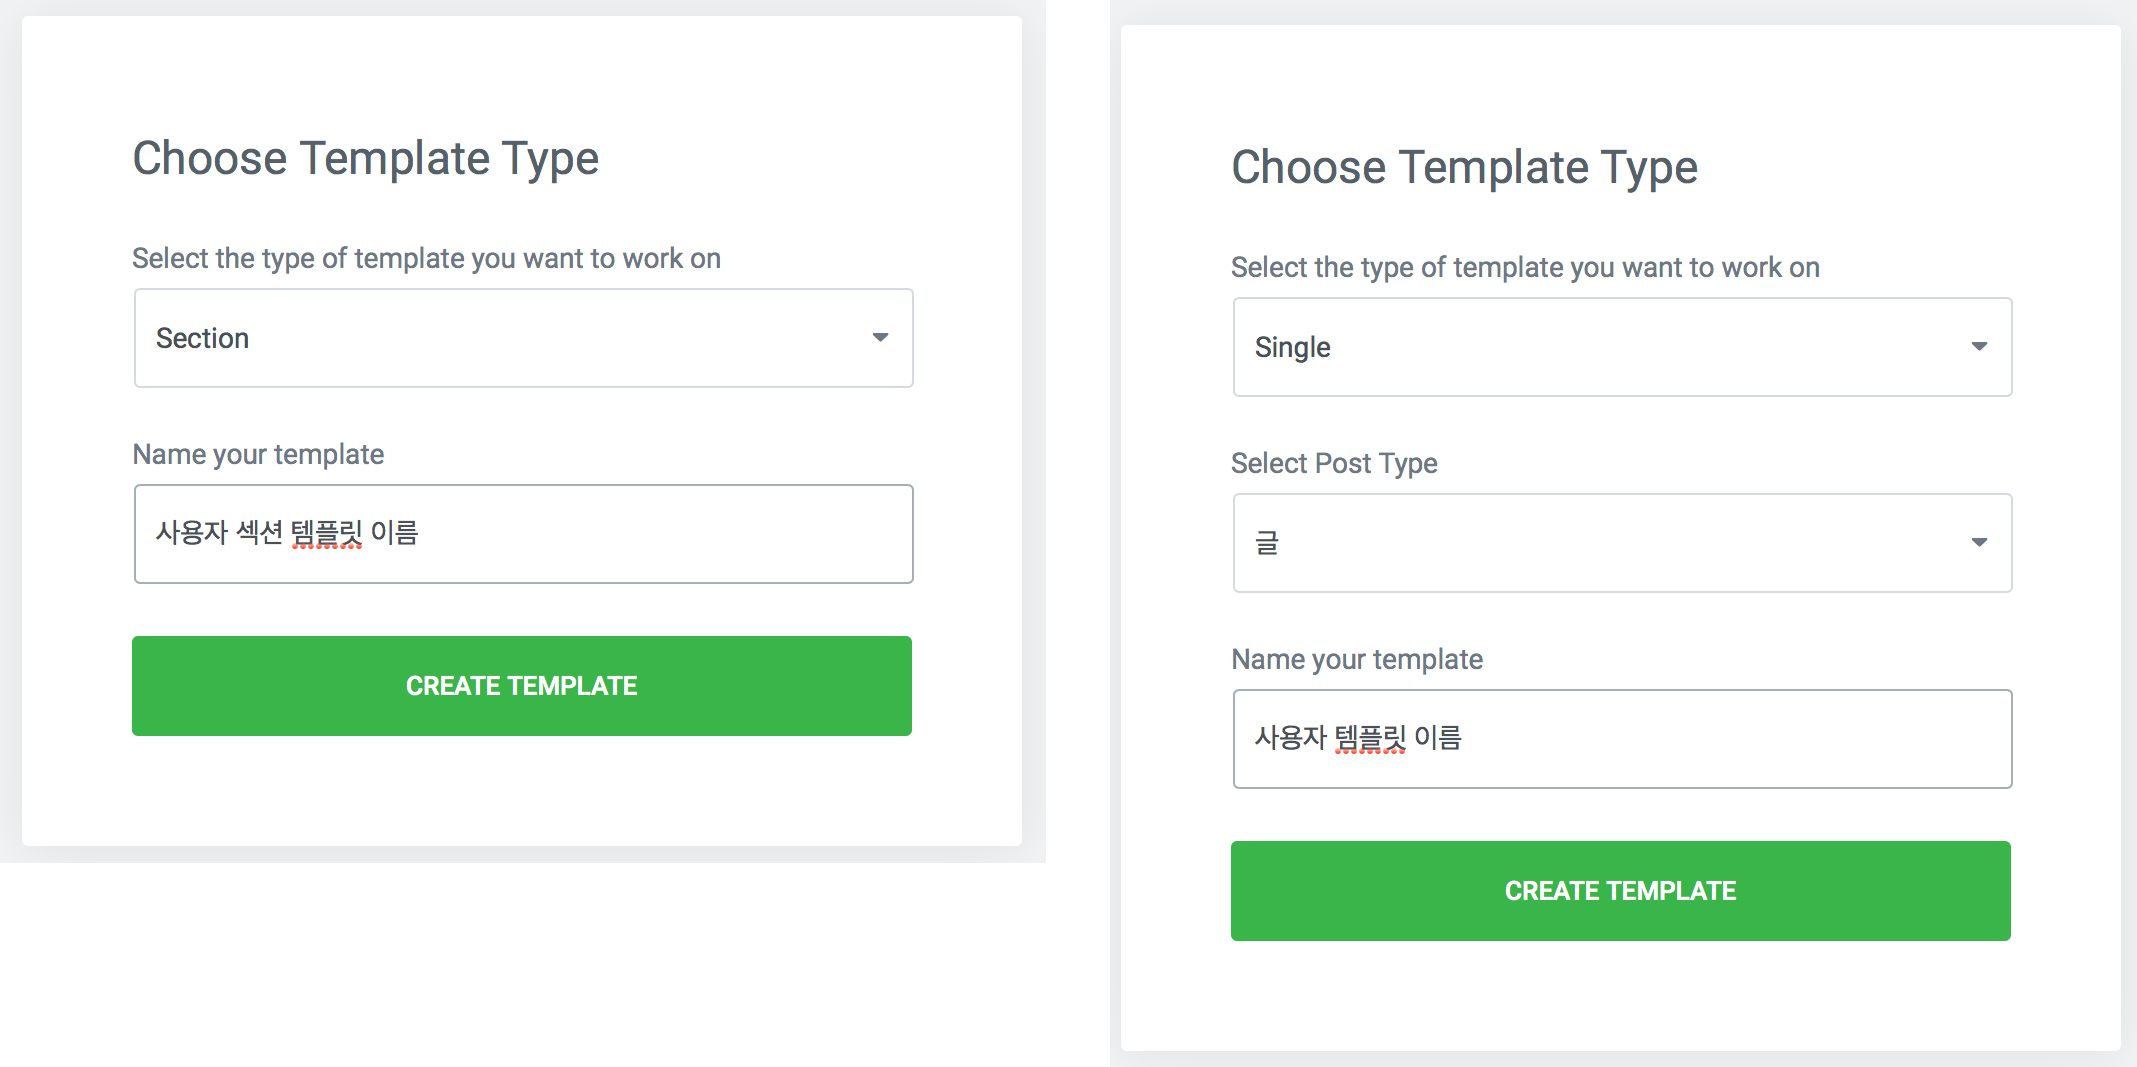 Choose Tempalte Type 에서 포스트타입 선택